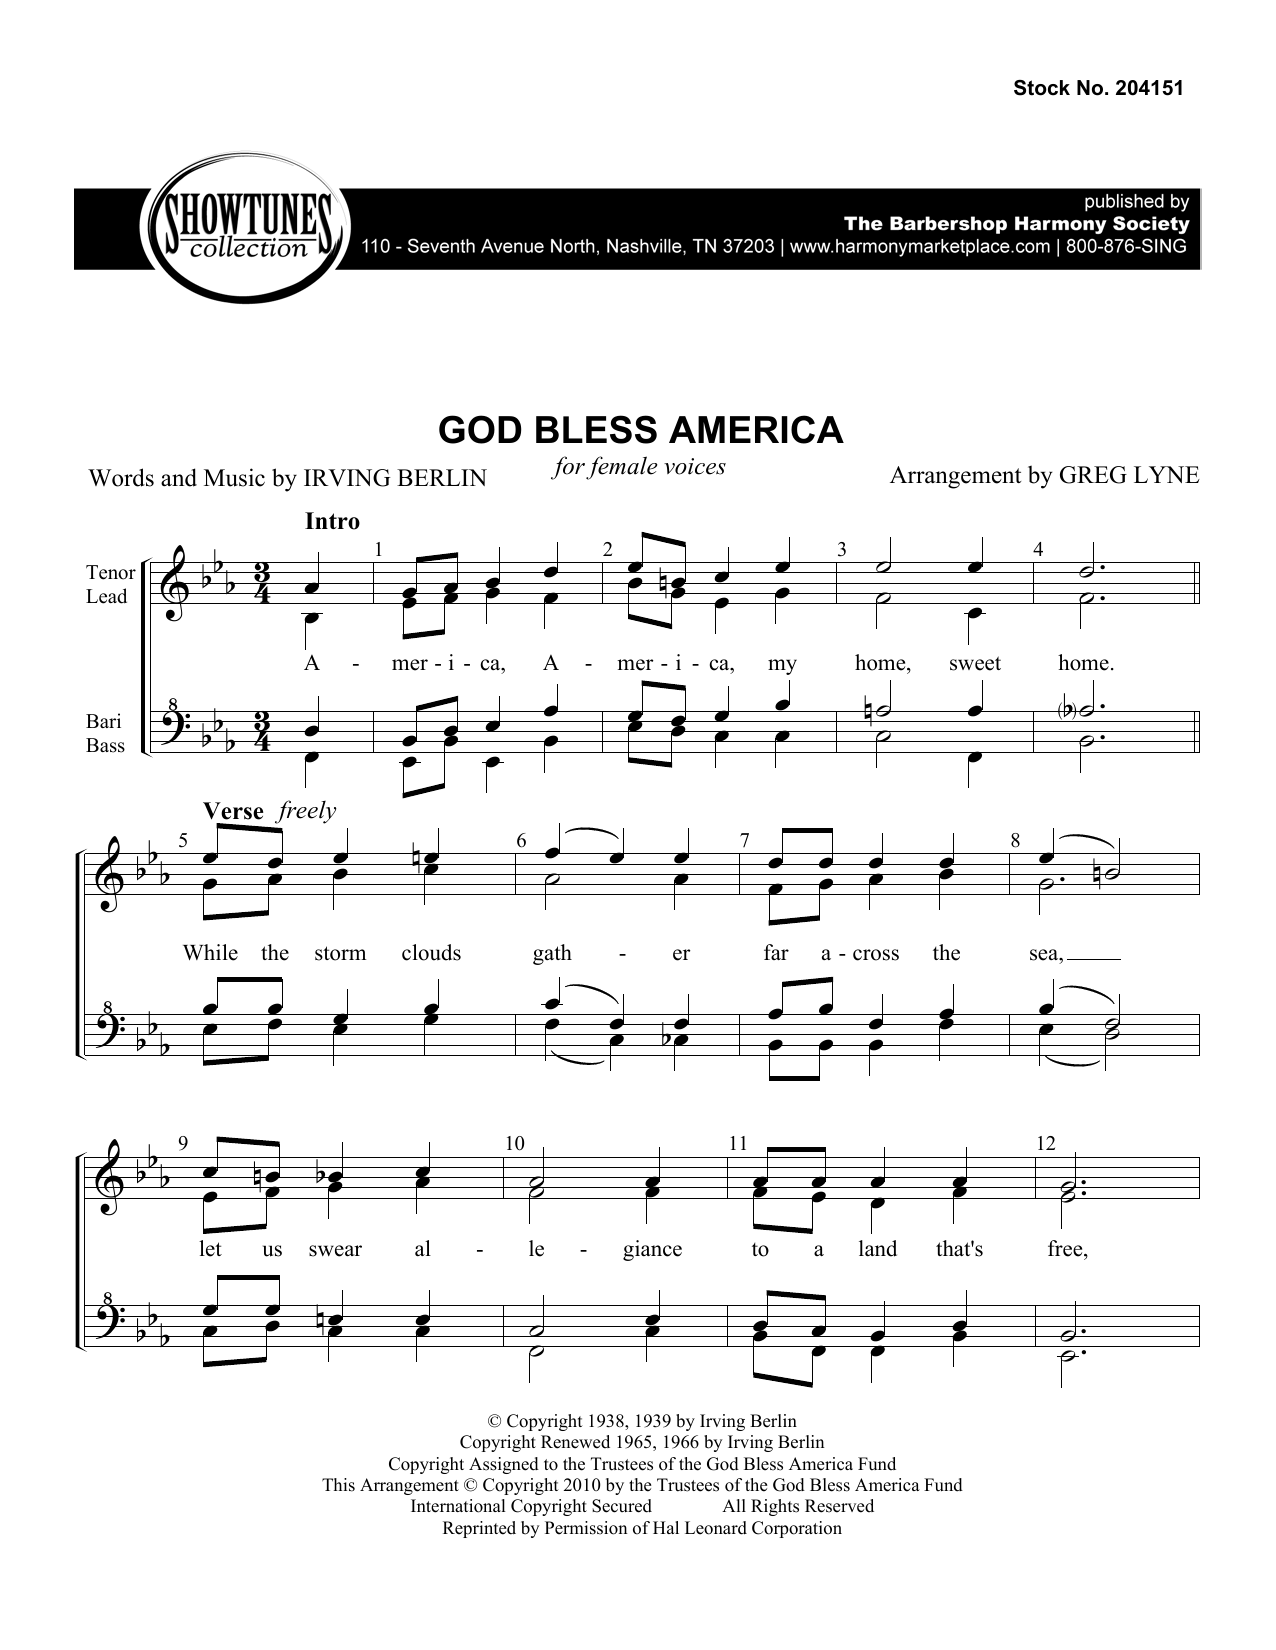 Irving Berlin God Bless America (arr. Greg Lyne) Sheet Music Notes & Chords for TTBB Choir - Download or Print PDF